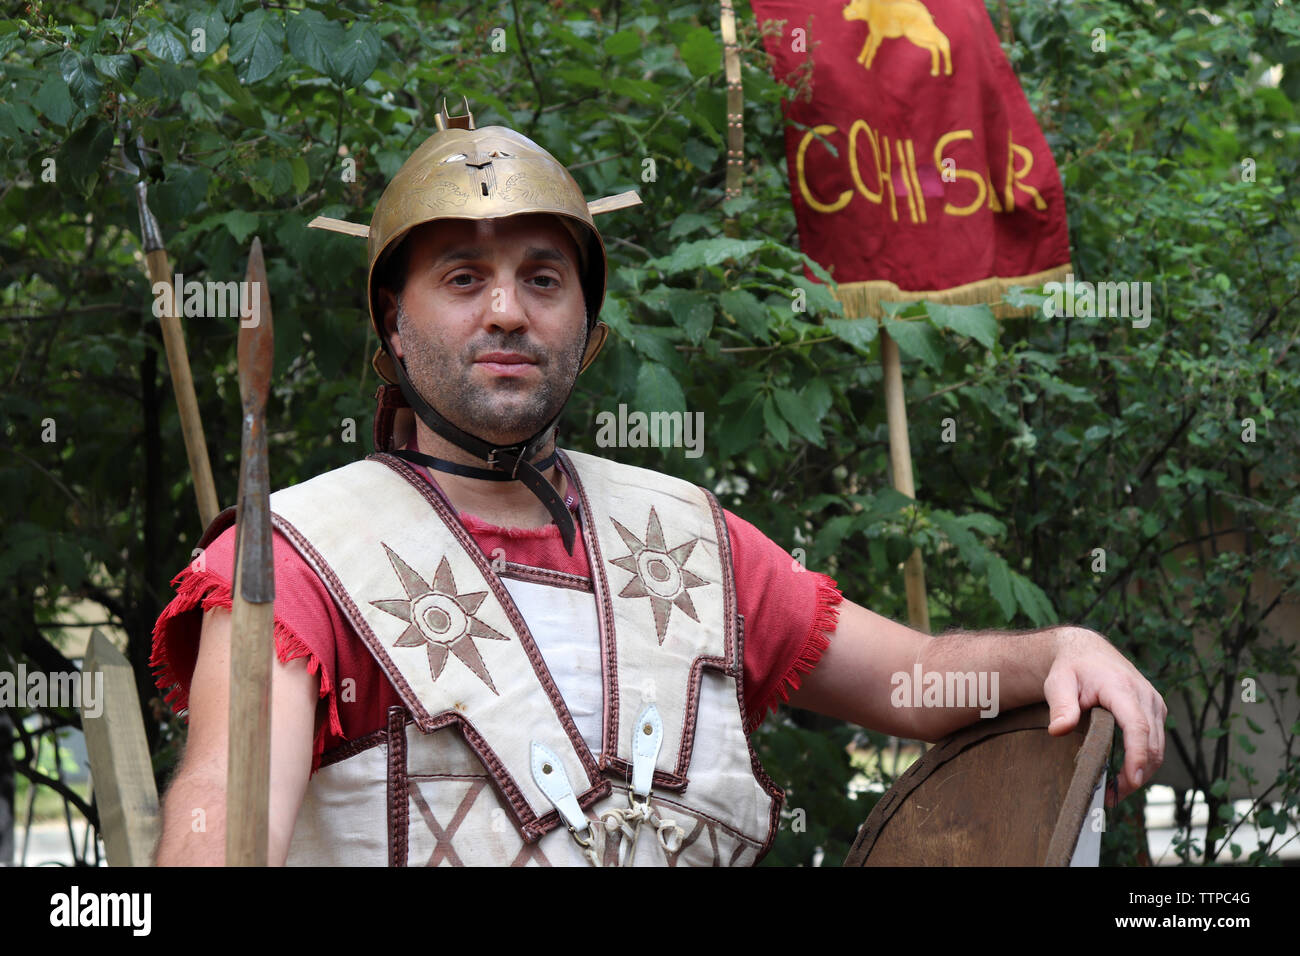 Legionär des antiken Rom während historische Festival Zeiten und Epochen posieren. Wiederaufbau von Rüstungen und Waffen der römischen Armee Stockfoto